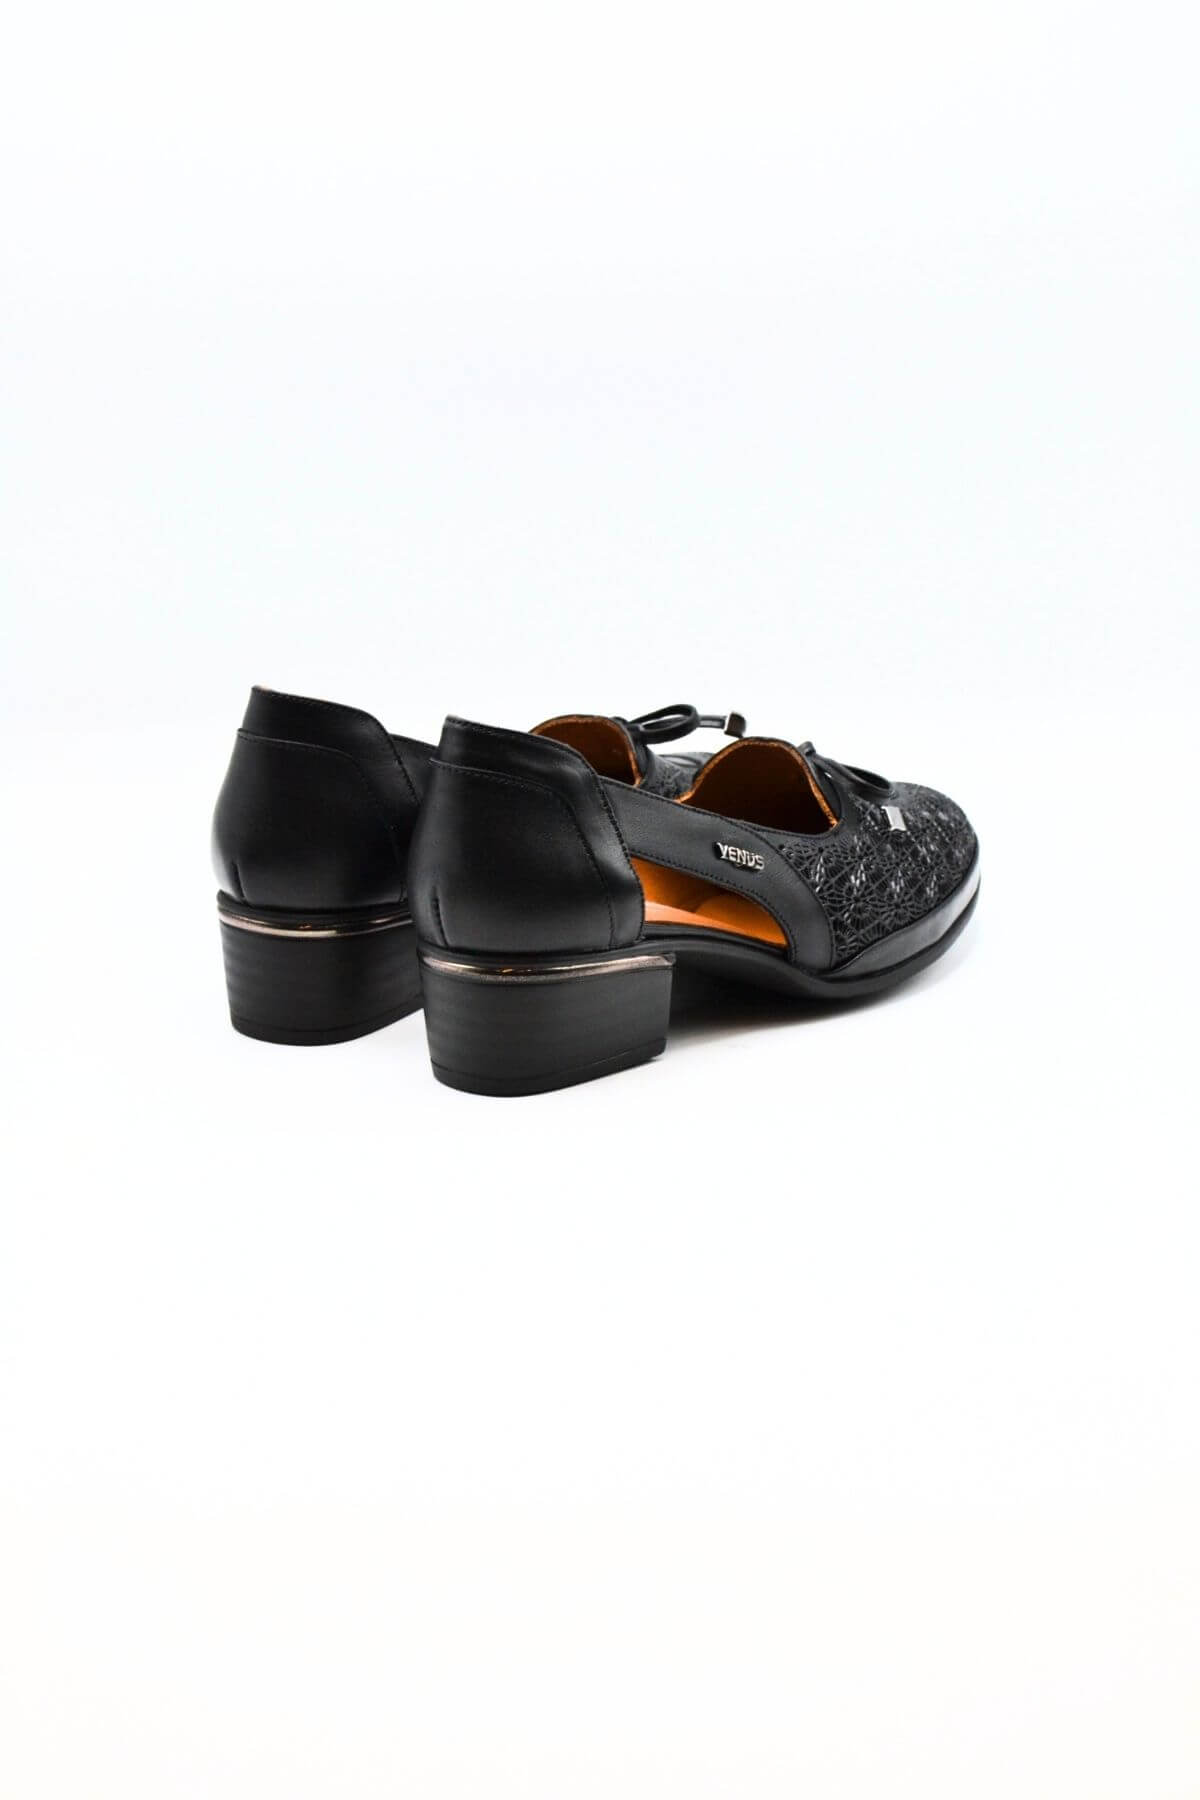 Kadın Topuklu Deri Ayakkabı Siyah 2312522Y - Thumbnail